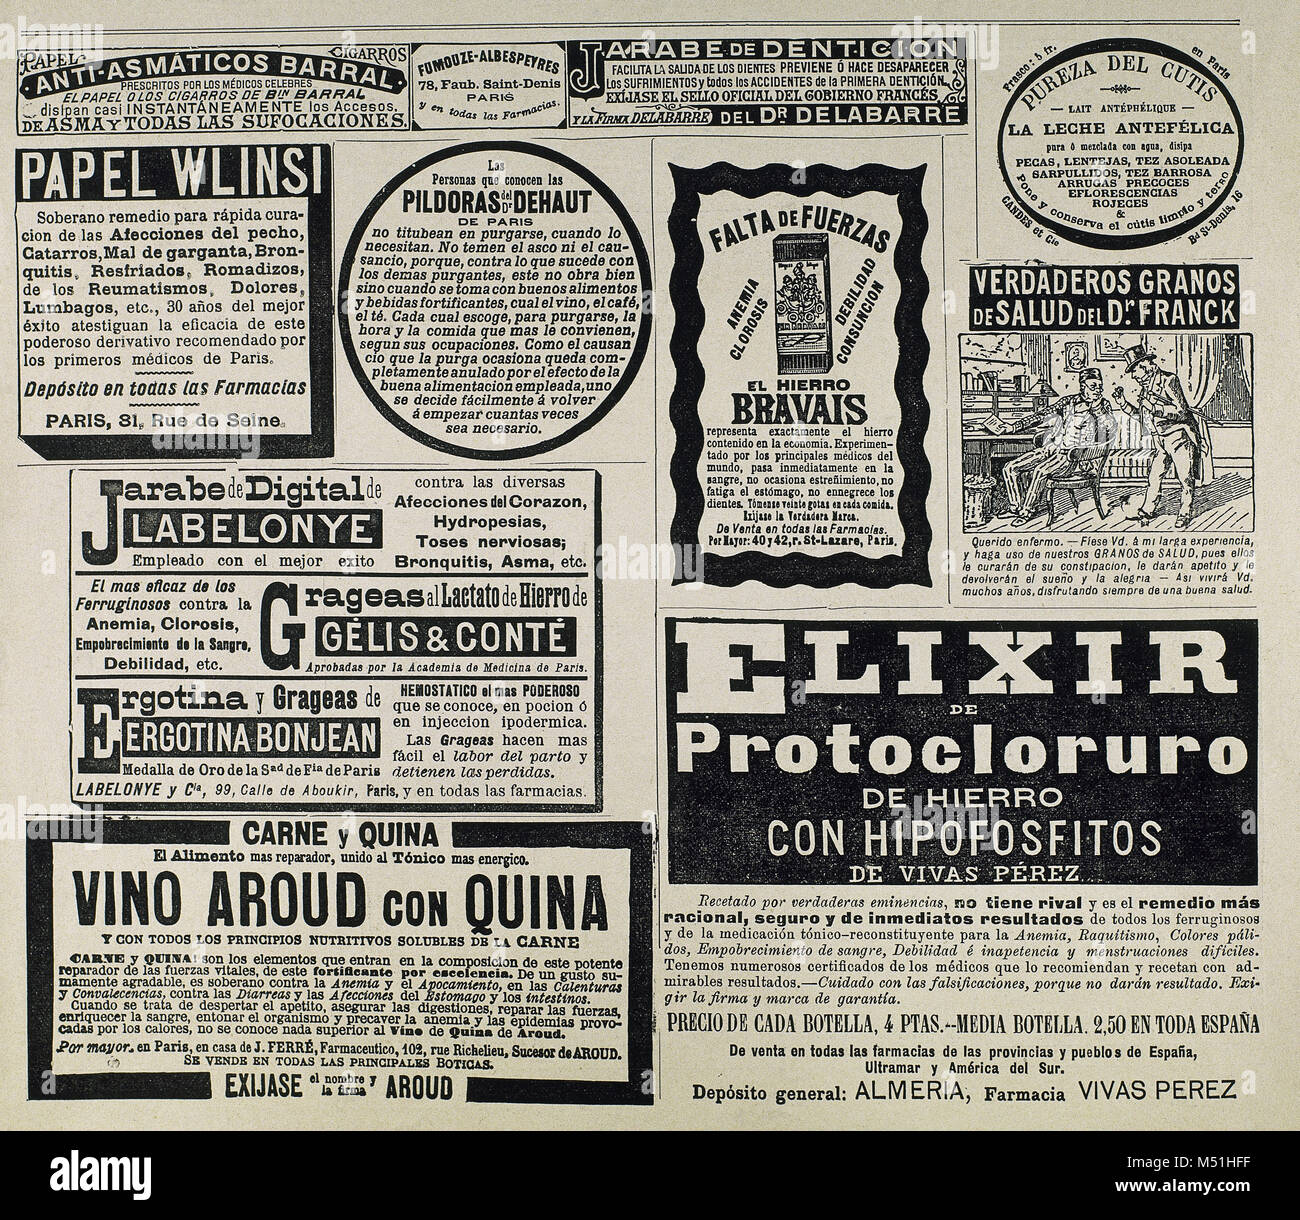 Alte kommerzielle Werbung. Restaurierungs- und Medikamente. La Ilustracion Artitsica, Januar 1893. Spanien. Stockfoto